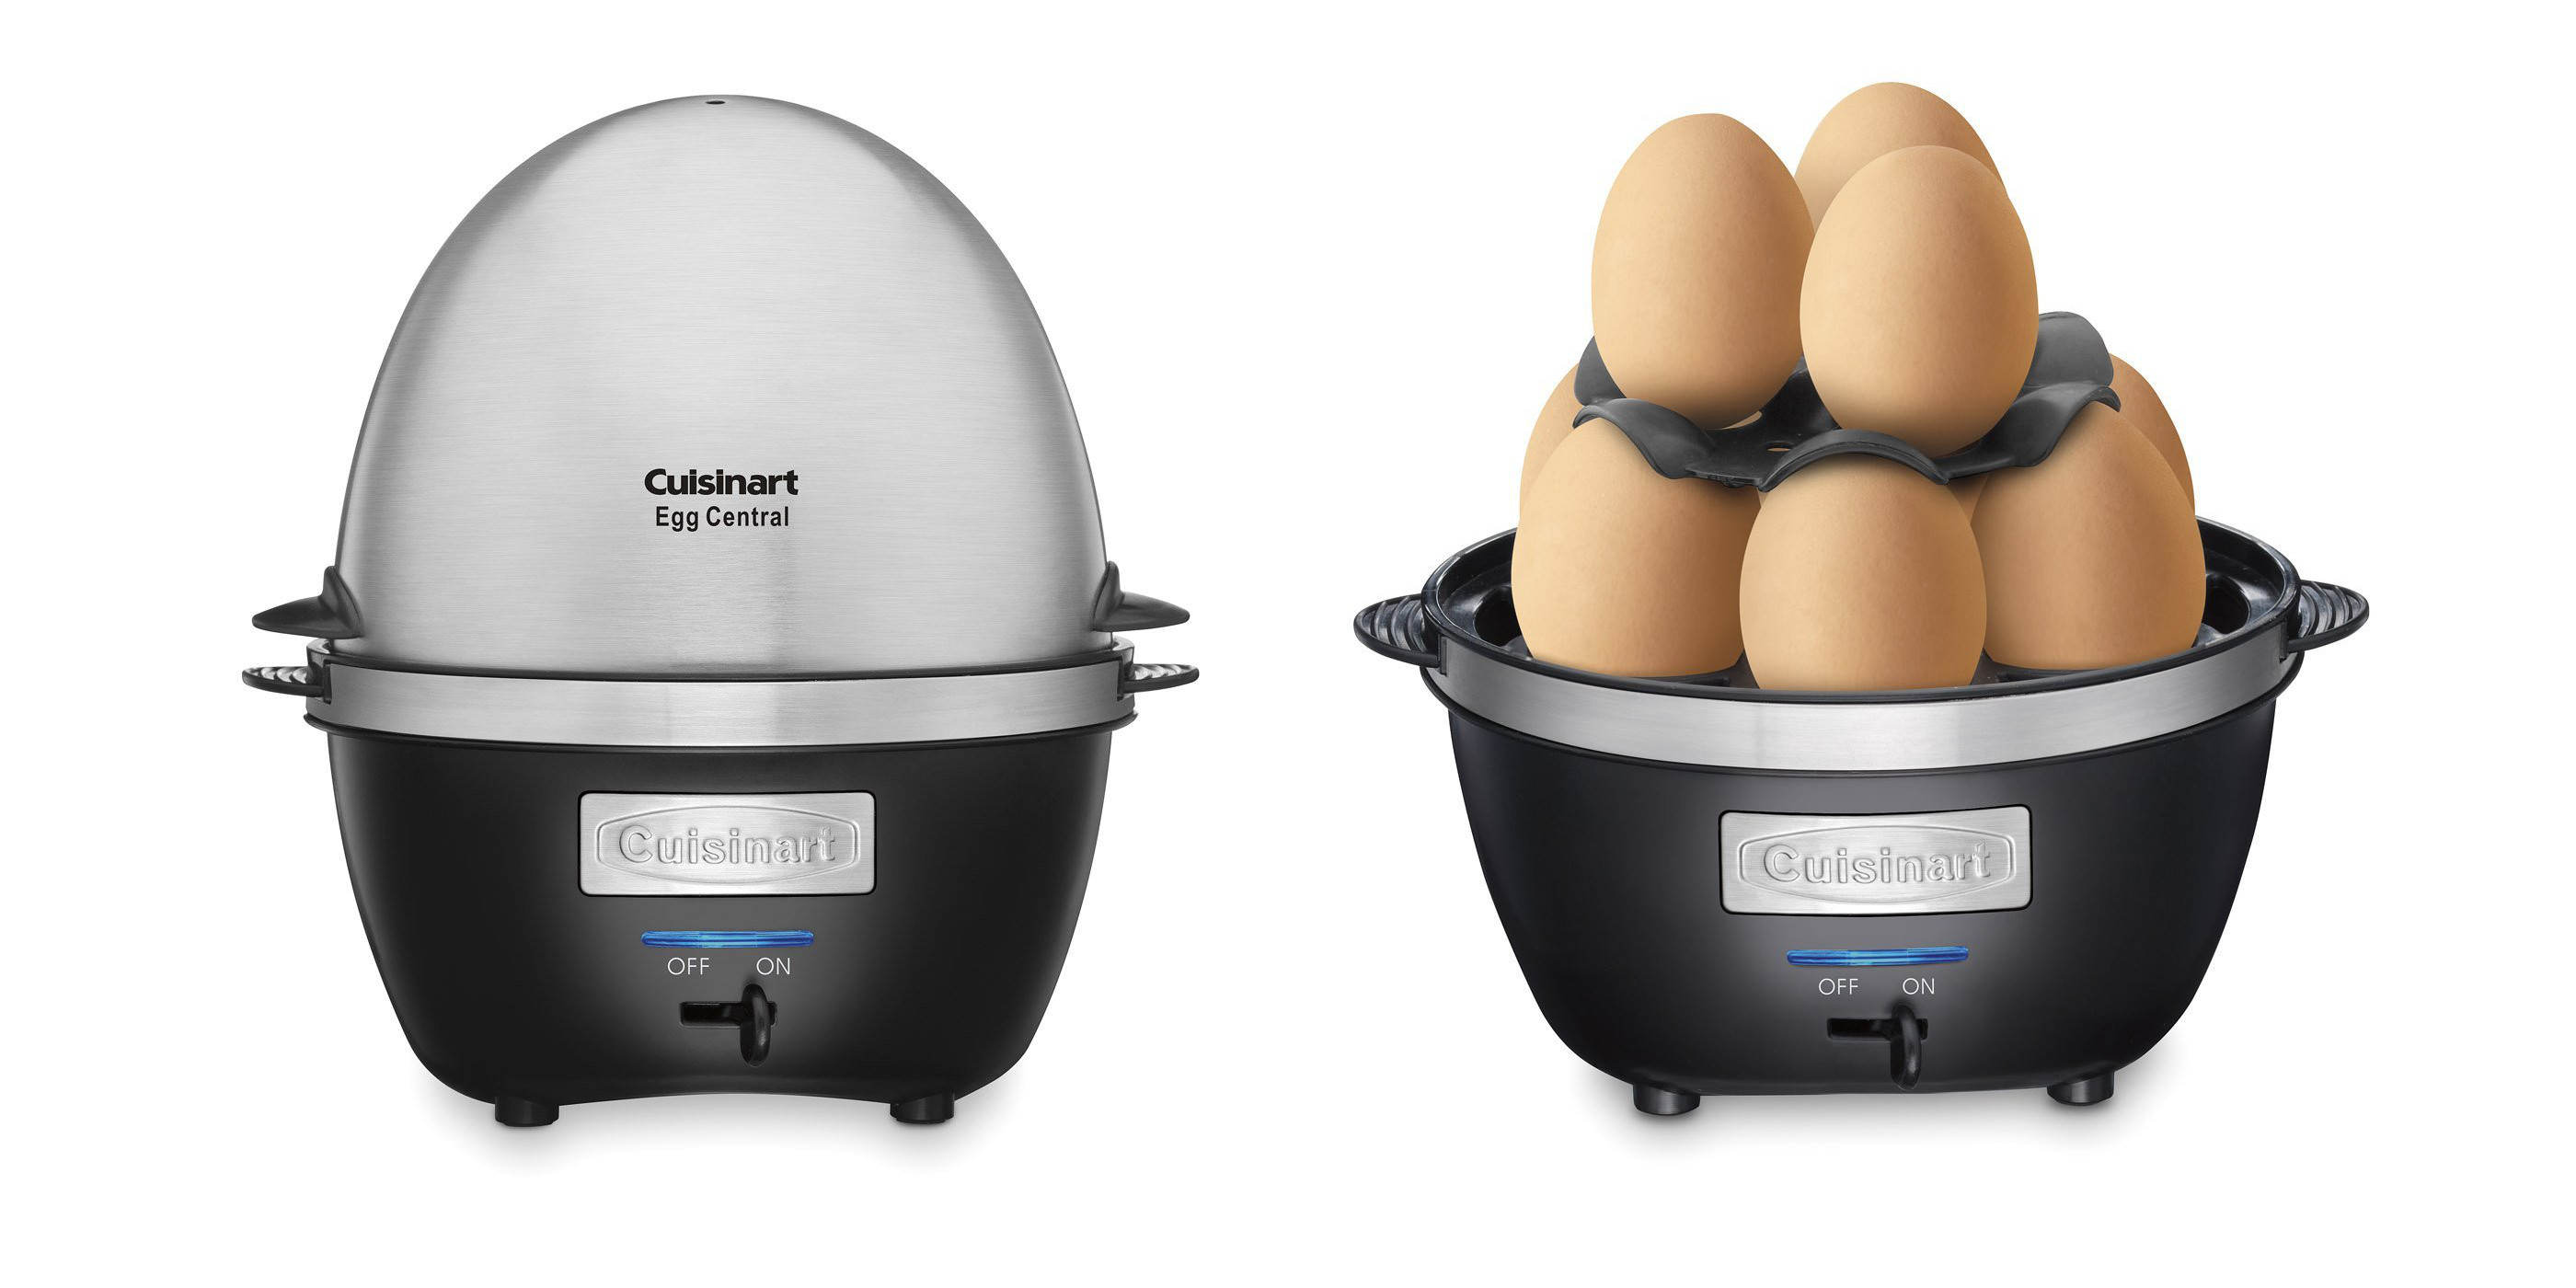 Cuisinart Egg Central Egg Cooker 